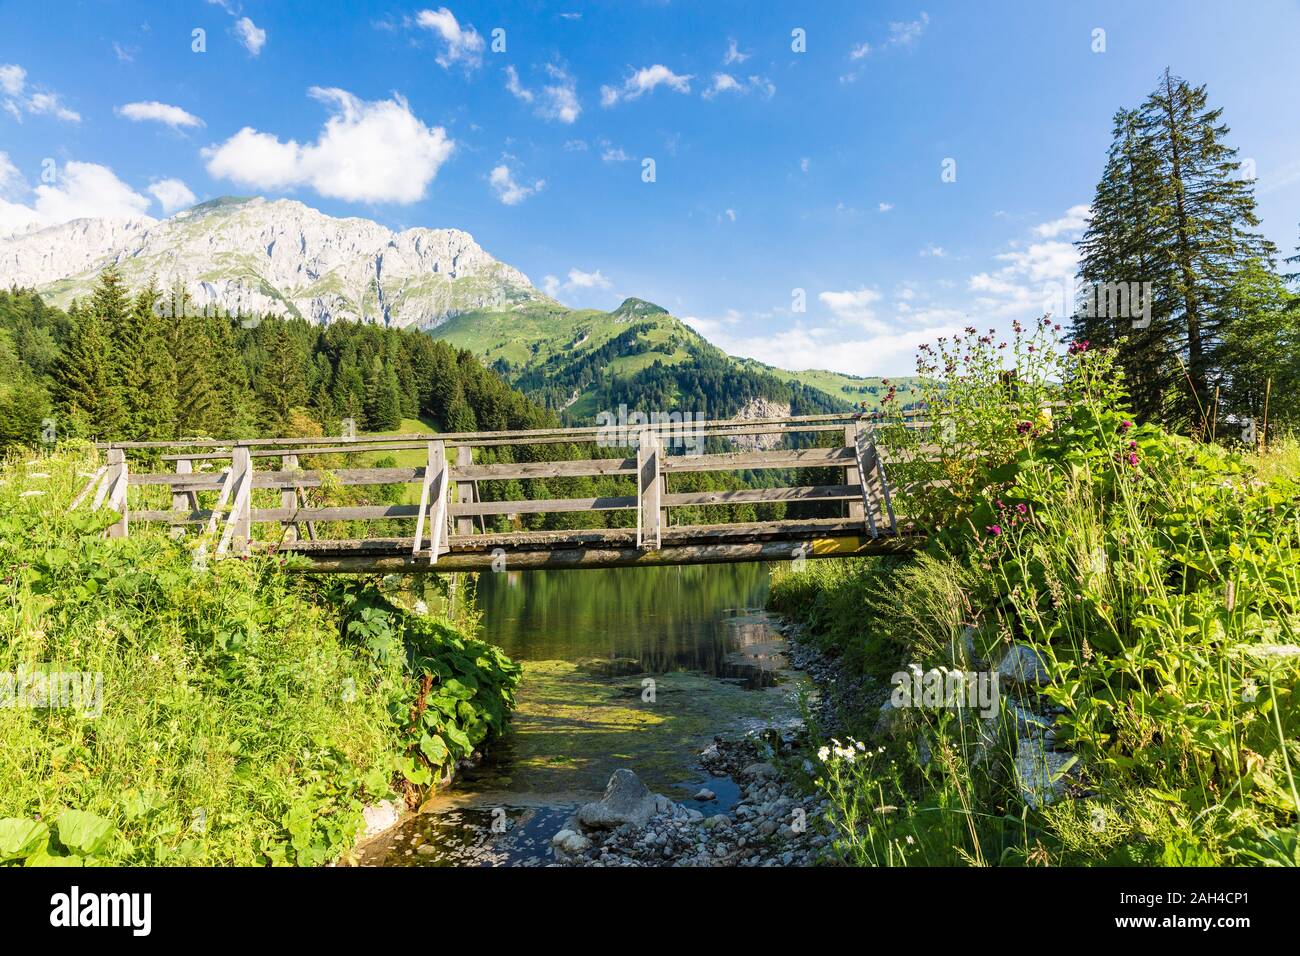 Austria, Carinzia, ponte in legno sul lago nelle Alpi Carniche durante l'estate Foto Stock